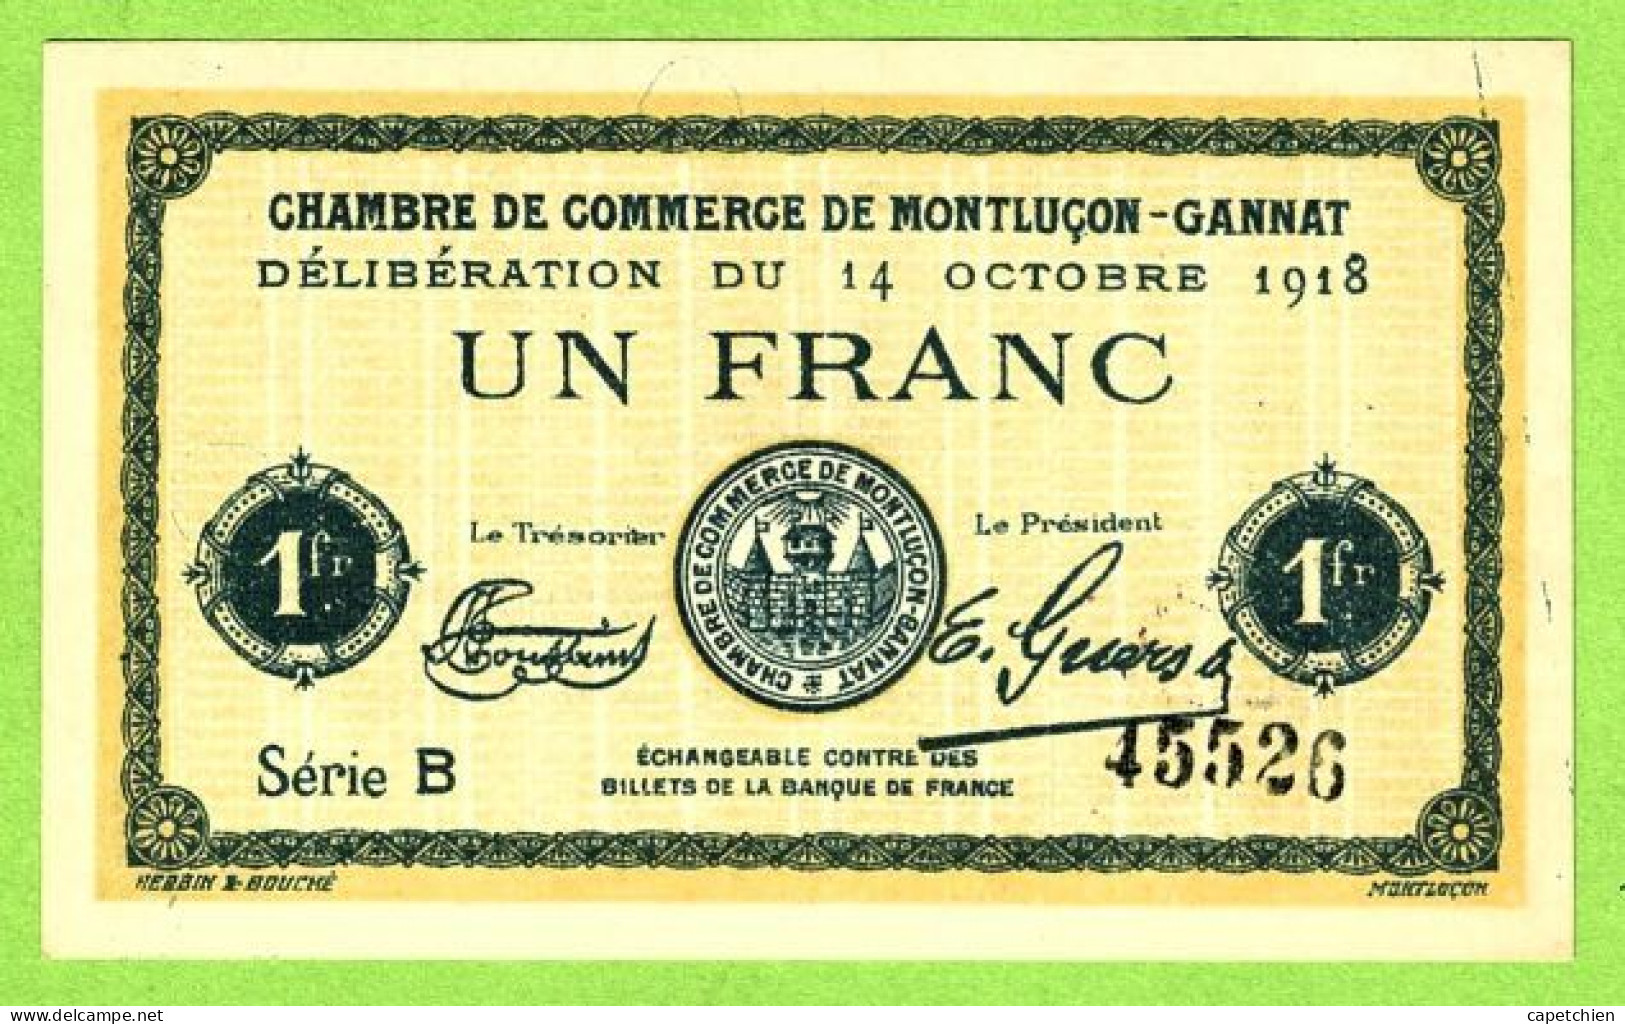 FRANCE / CHAMBRE De COMMERCE De MONTLUÇON - GANNAT / 1 FRANC/ 14 OCTOBRE 1918  N° 45526 / SERIE B / NEUF - Handelskammer